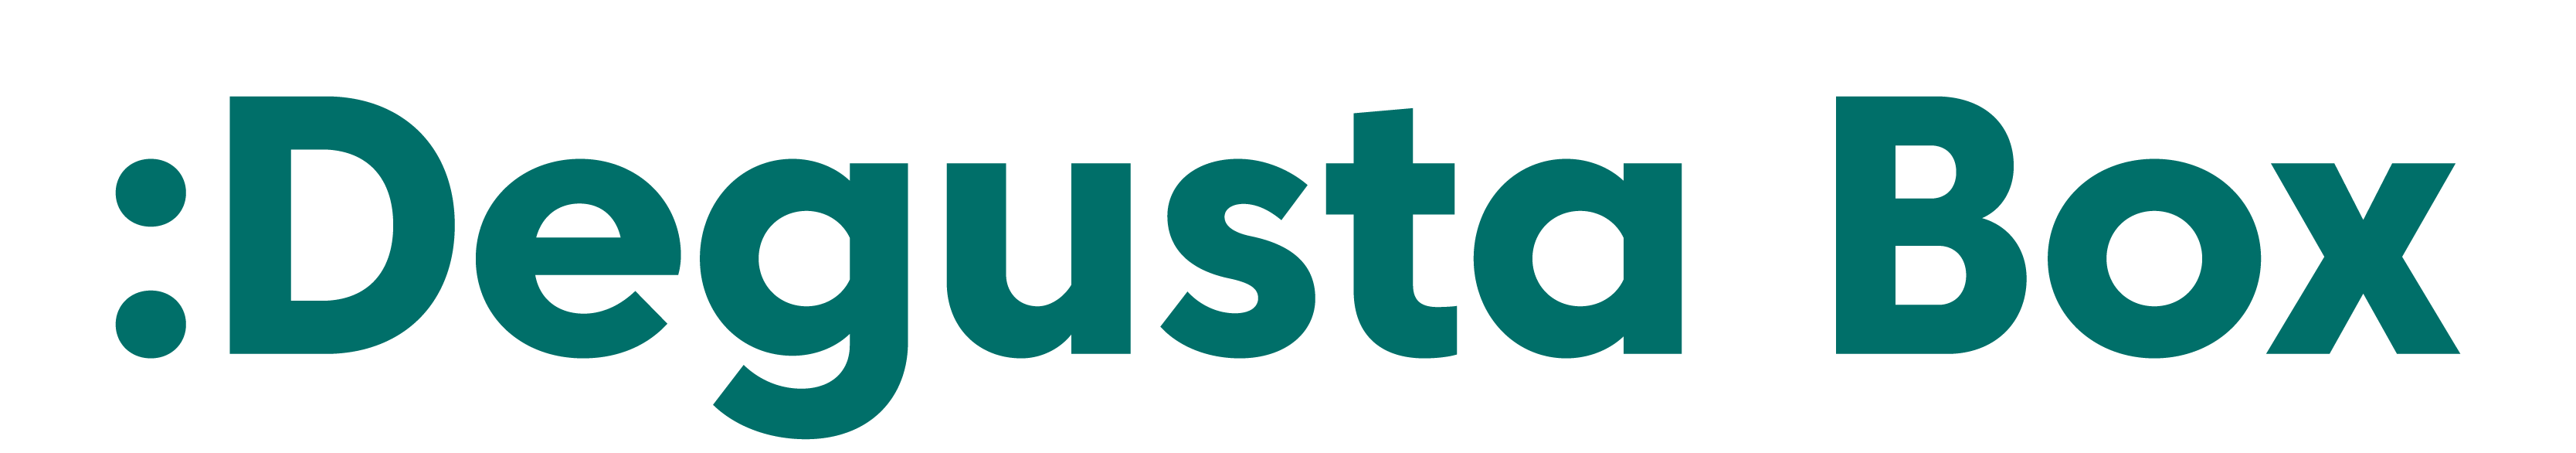 degustaBox-logo